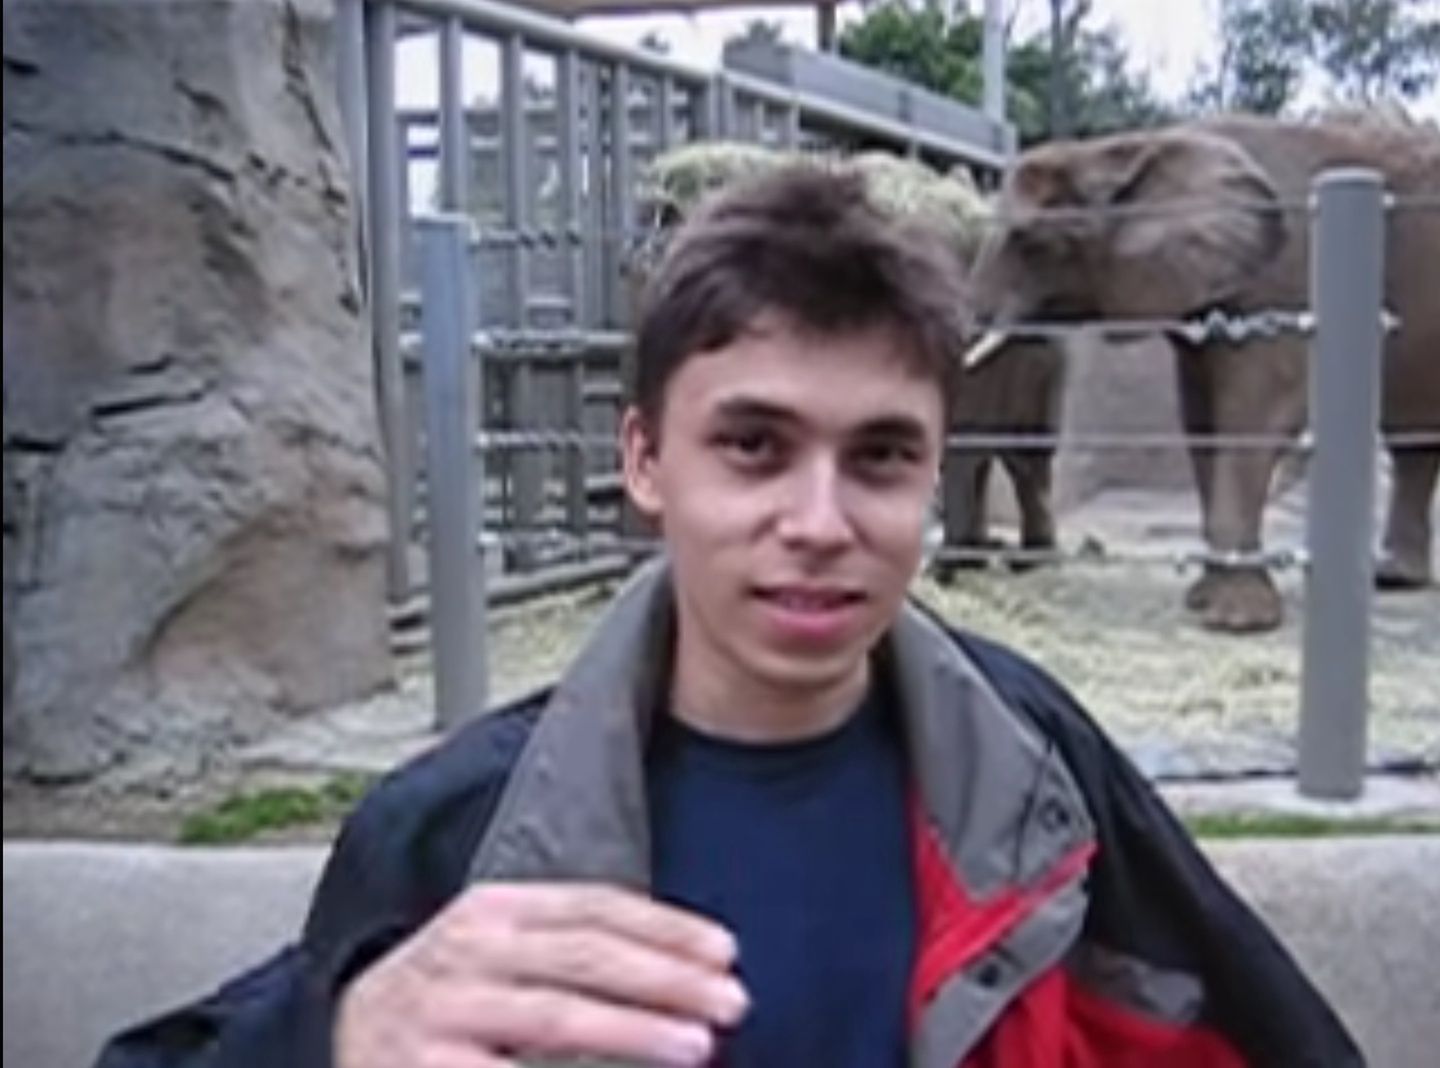 Kadr z filmiku "Me at the zoo"